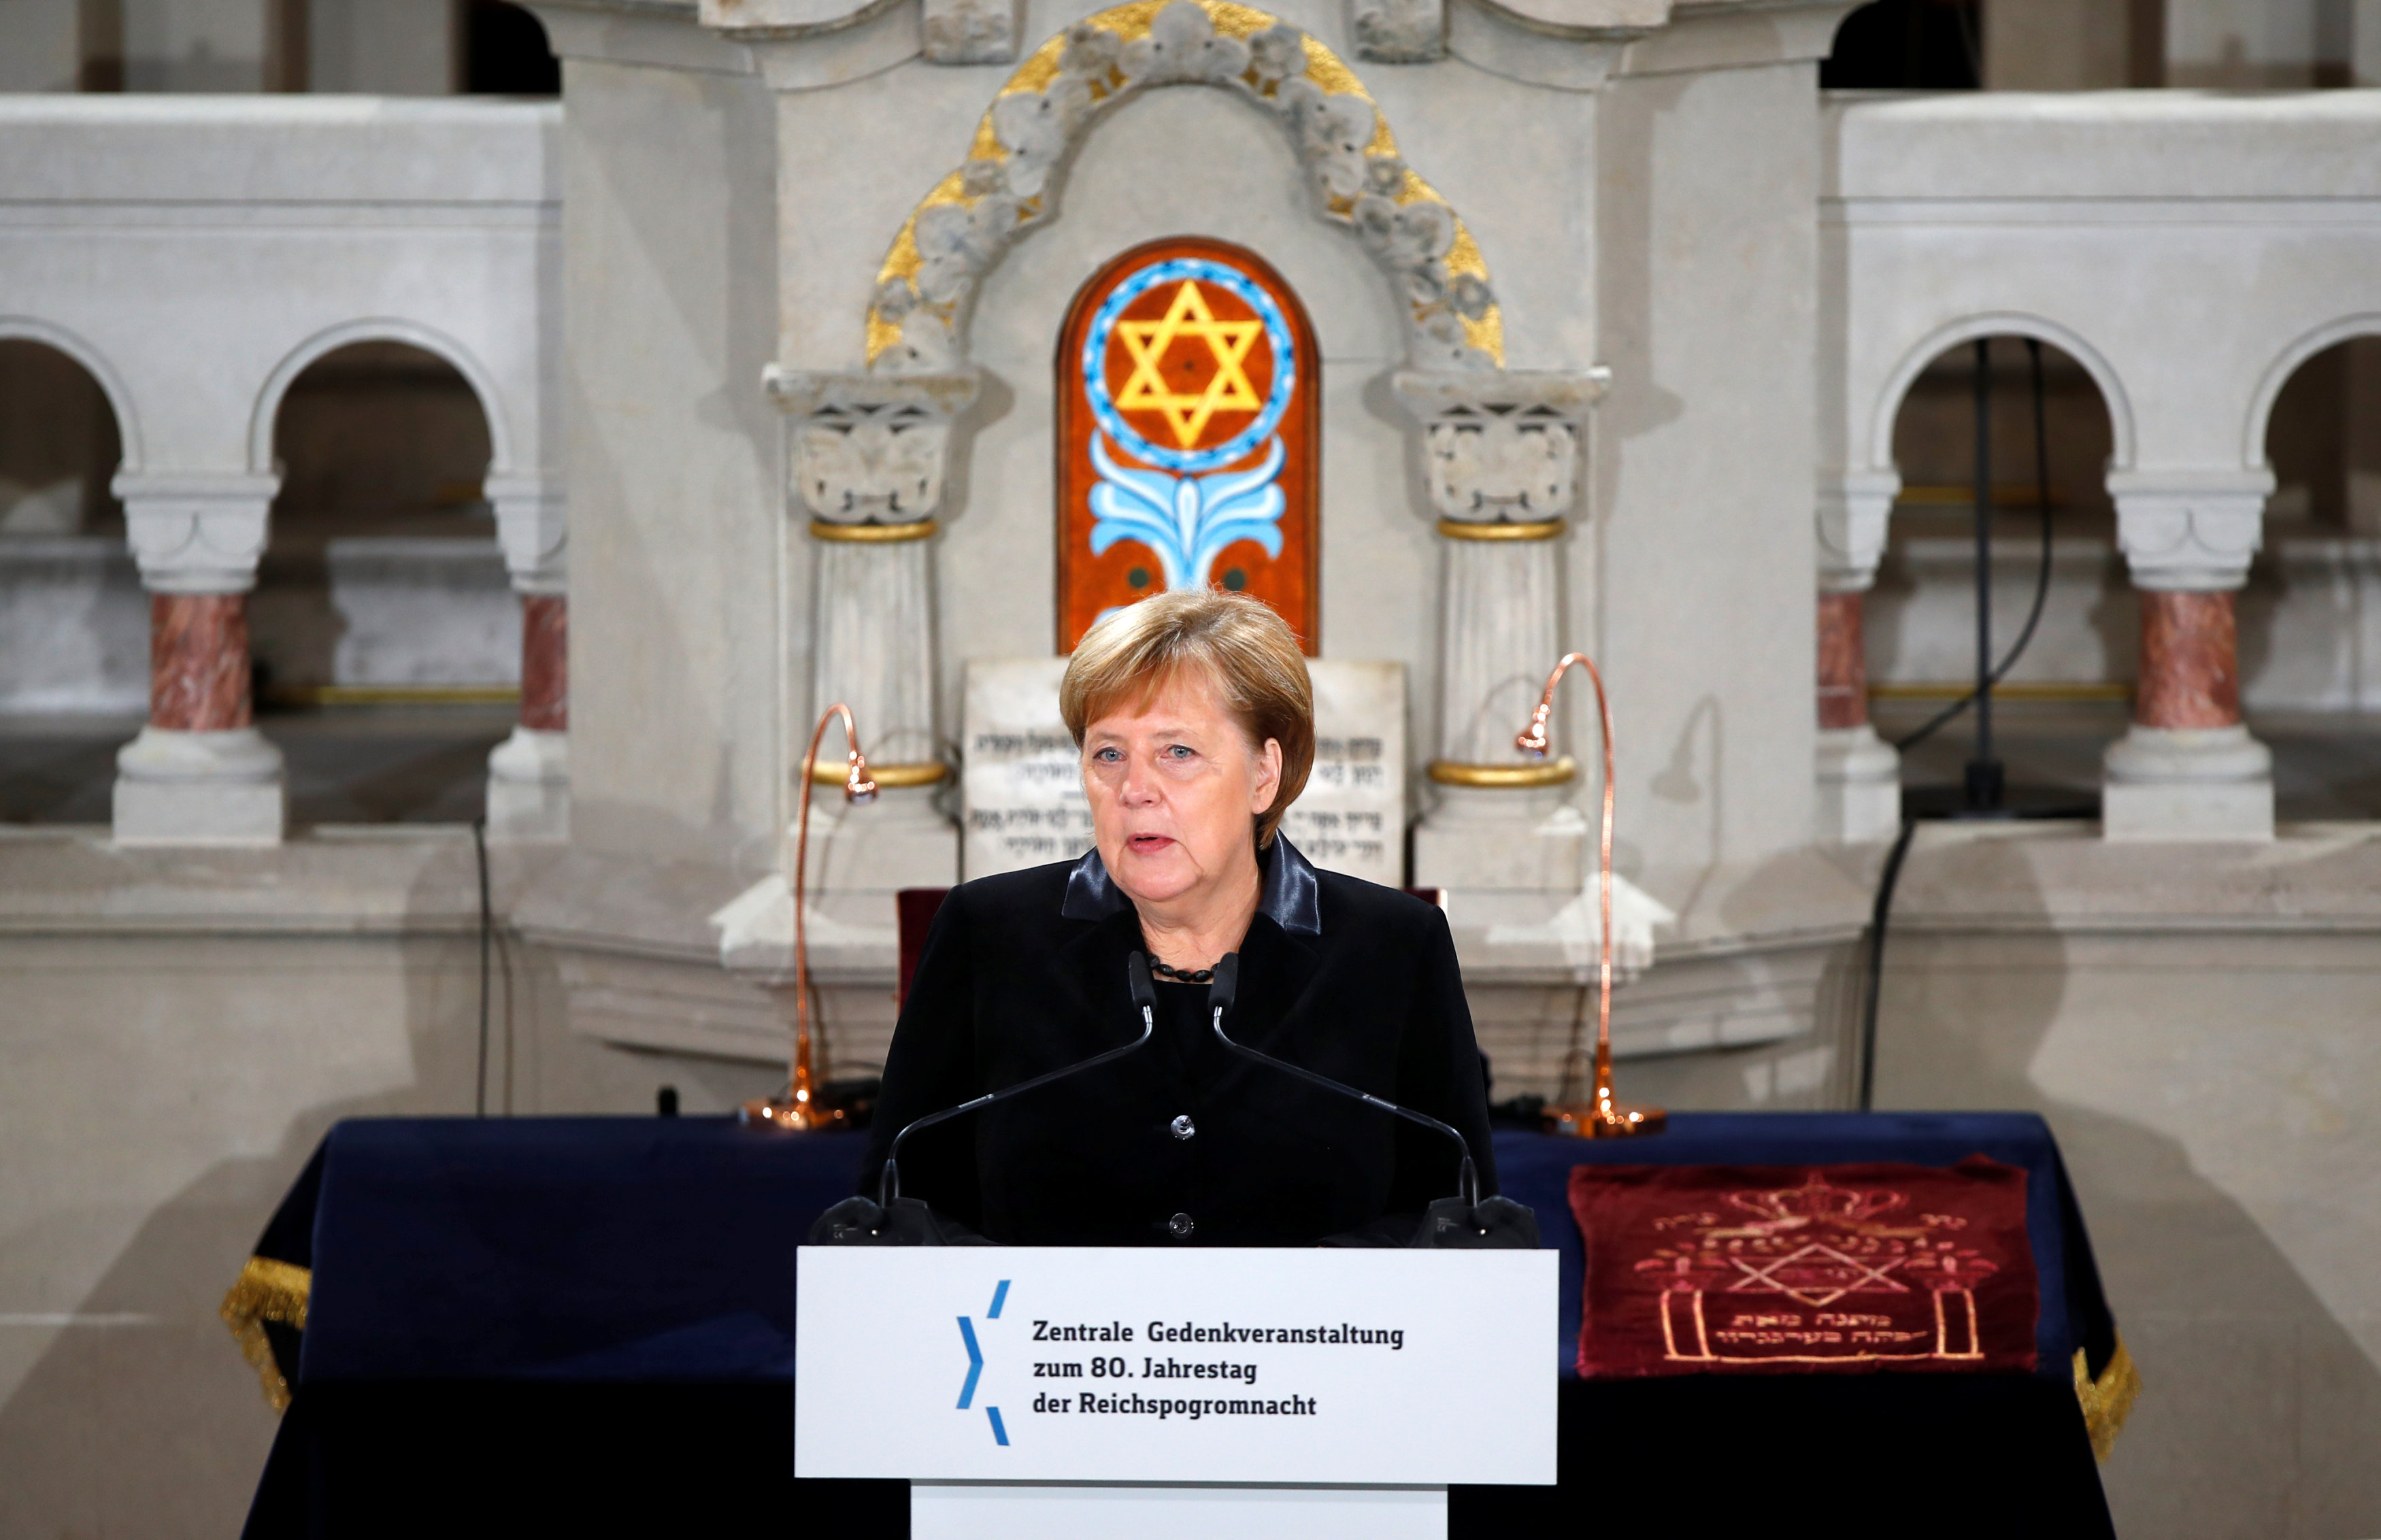 Angela Merkel in Berlin's Rykestrasse Synagogue on November 9, 2018 (by Reuters)